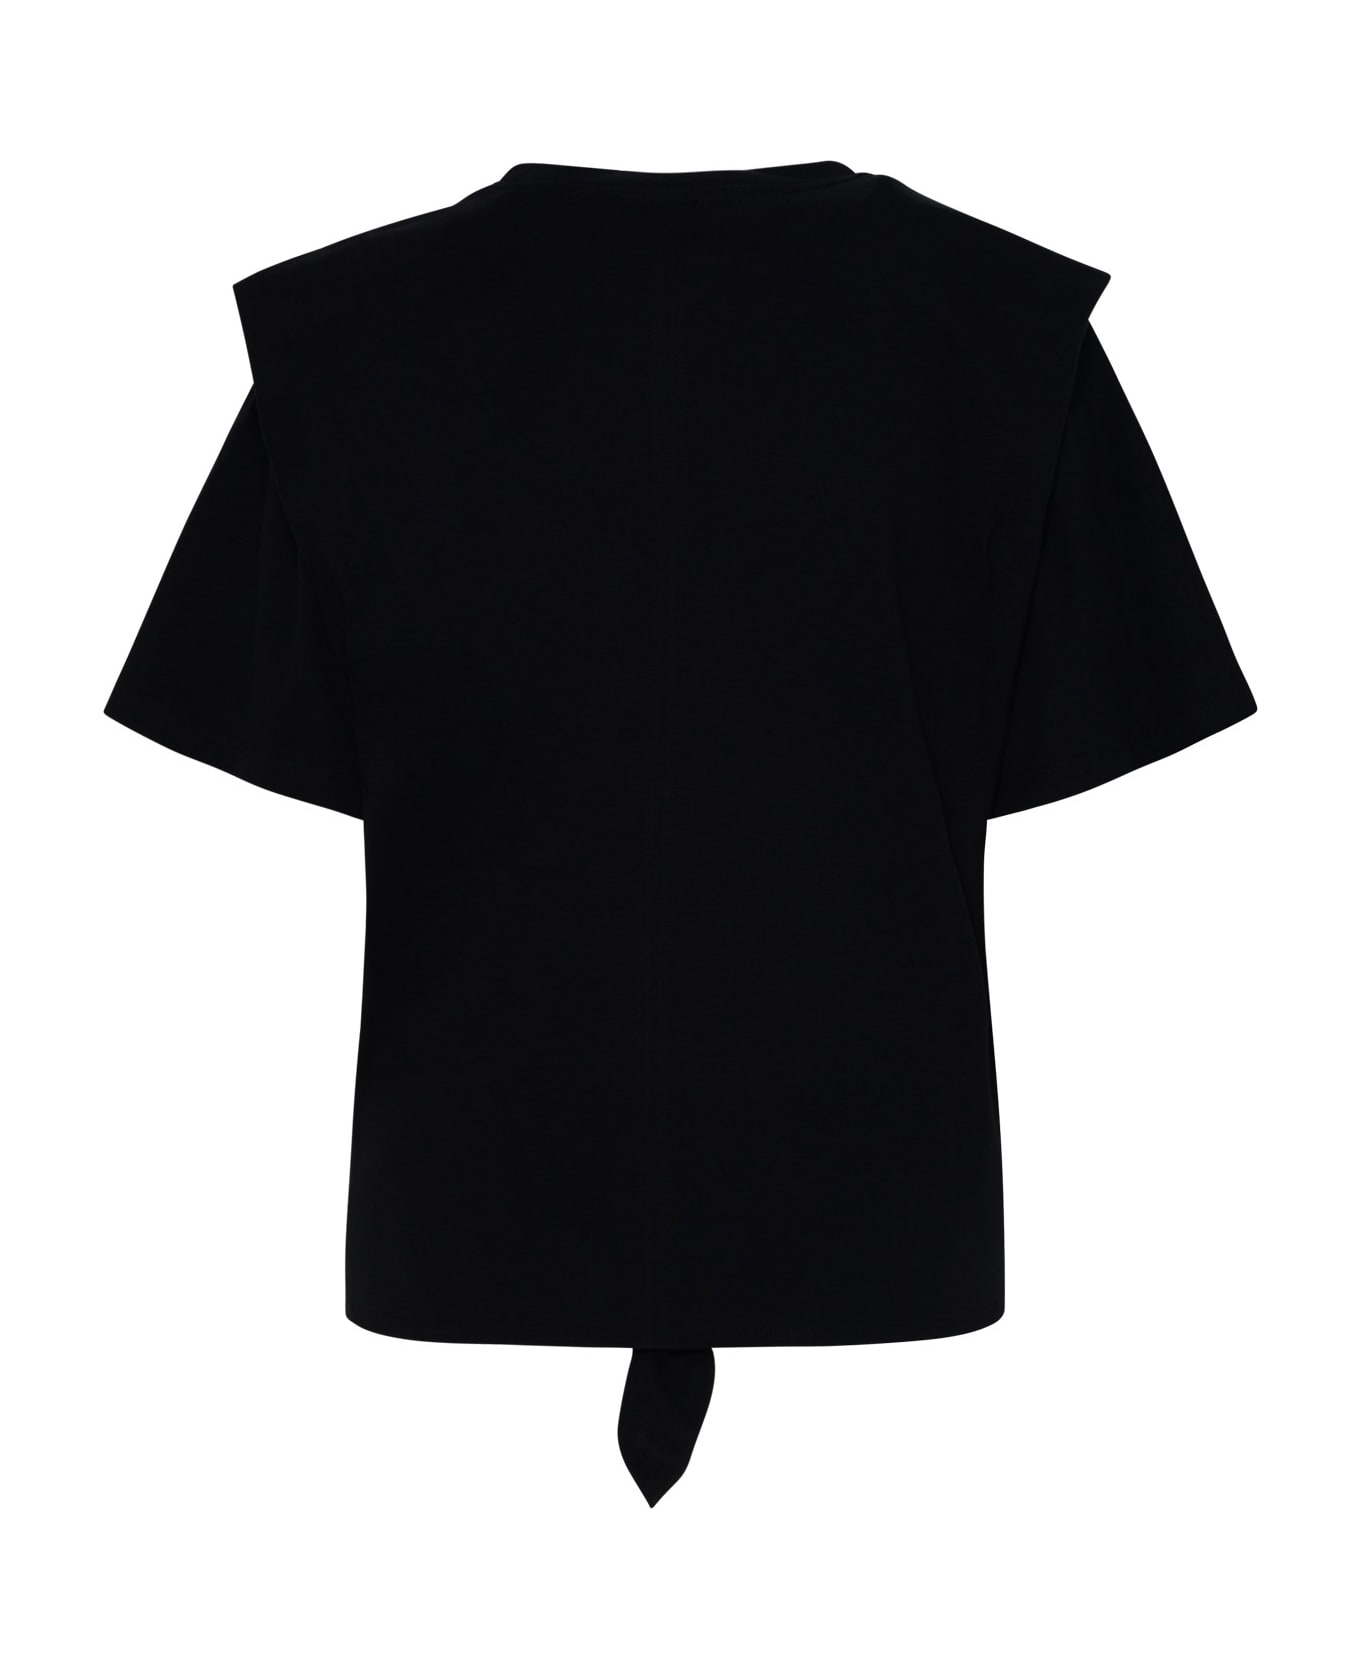 Isabel Marant Zelikia Black Cotton T-shirt - Black